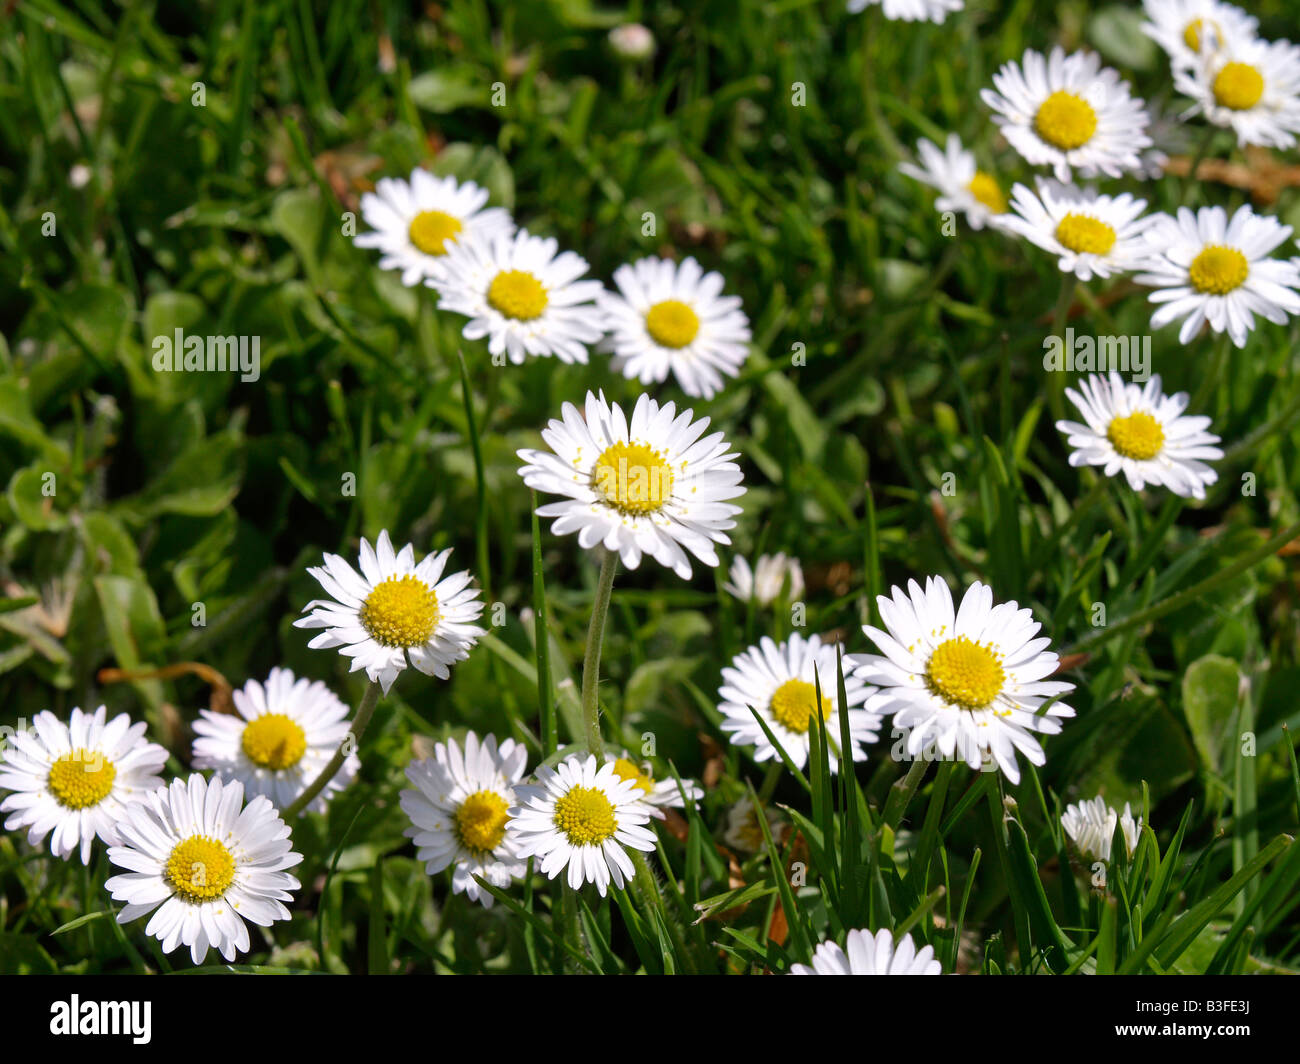 Wiese, Gaensebluemchen, Lawn Daisies (Bellis perennis) Stock Photo